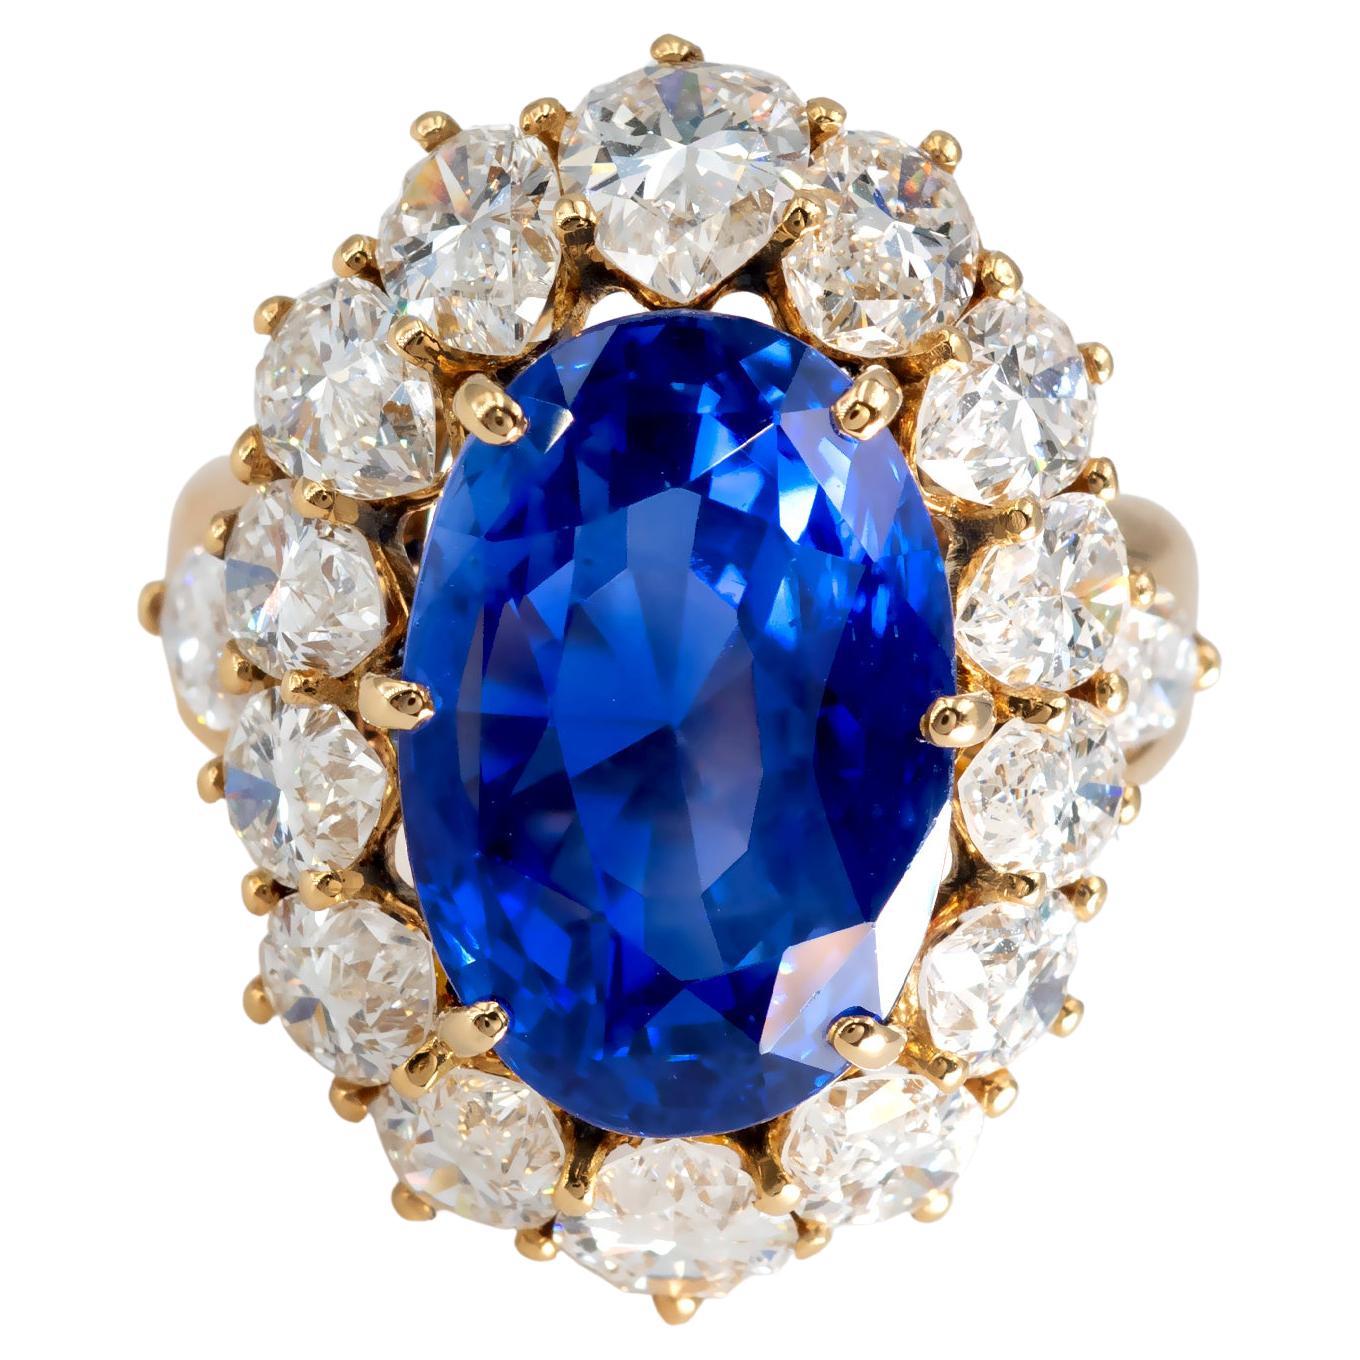 Erstaunliche 17,38 Karat Natürlicher, unerhitzter, königsblauer Saphir aus Sri Lanka (Ceylon), eingefasst in einen einzigartigen Ring aus 18 Karat Gold. 
Der Saphir wird mit einem Edelsteingutachten (Zertifikat) der GRS geliefert, das besagt, dass